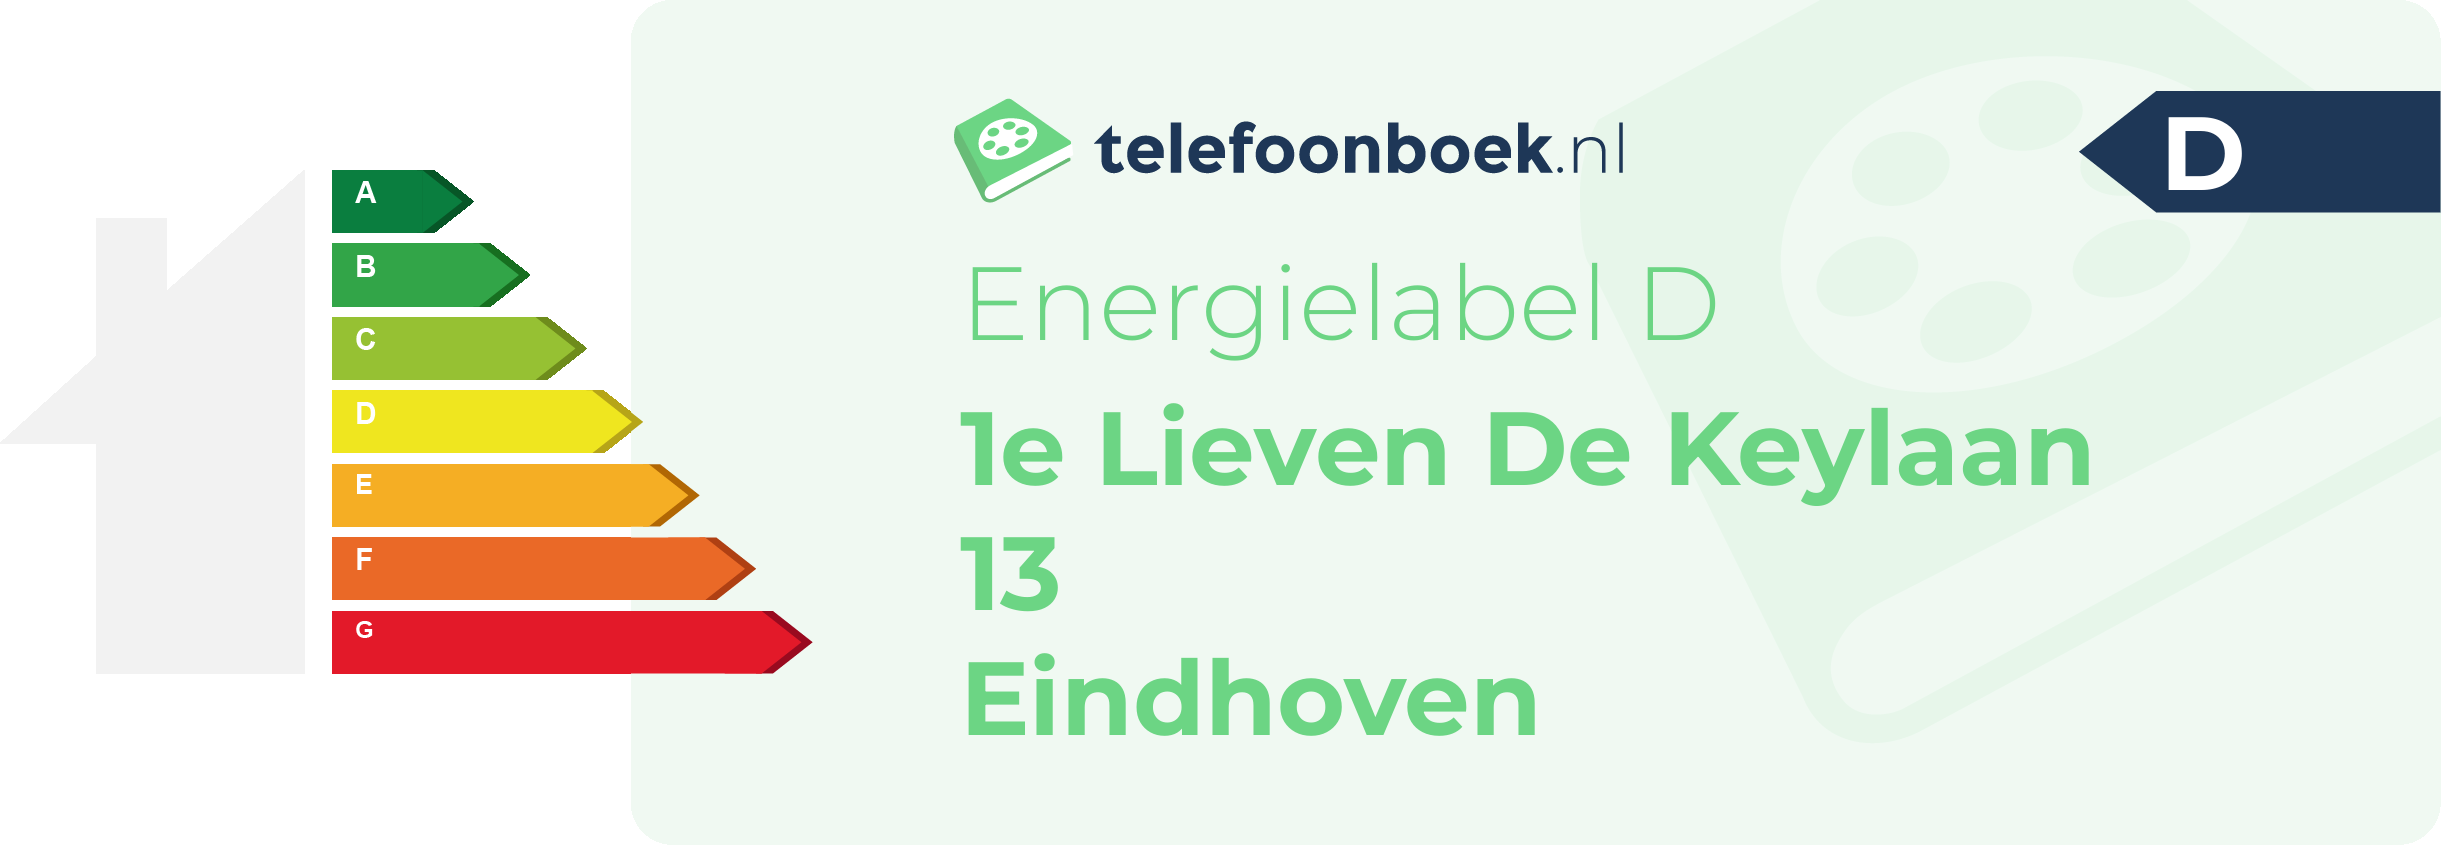 Energielabel 1e Lieven De Keylaan 13 Eindhoven